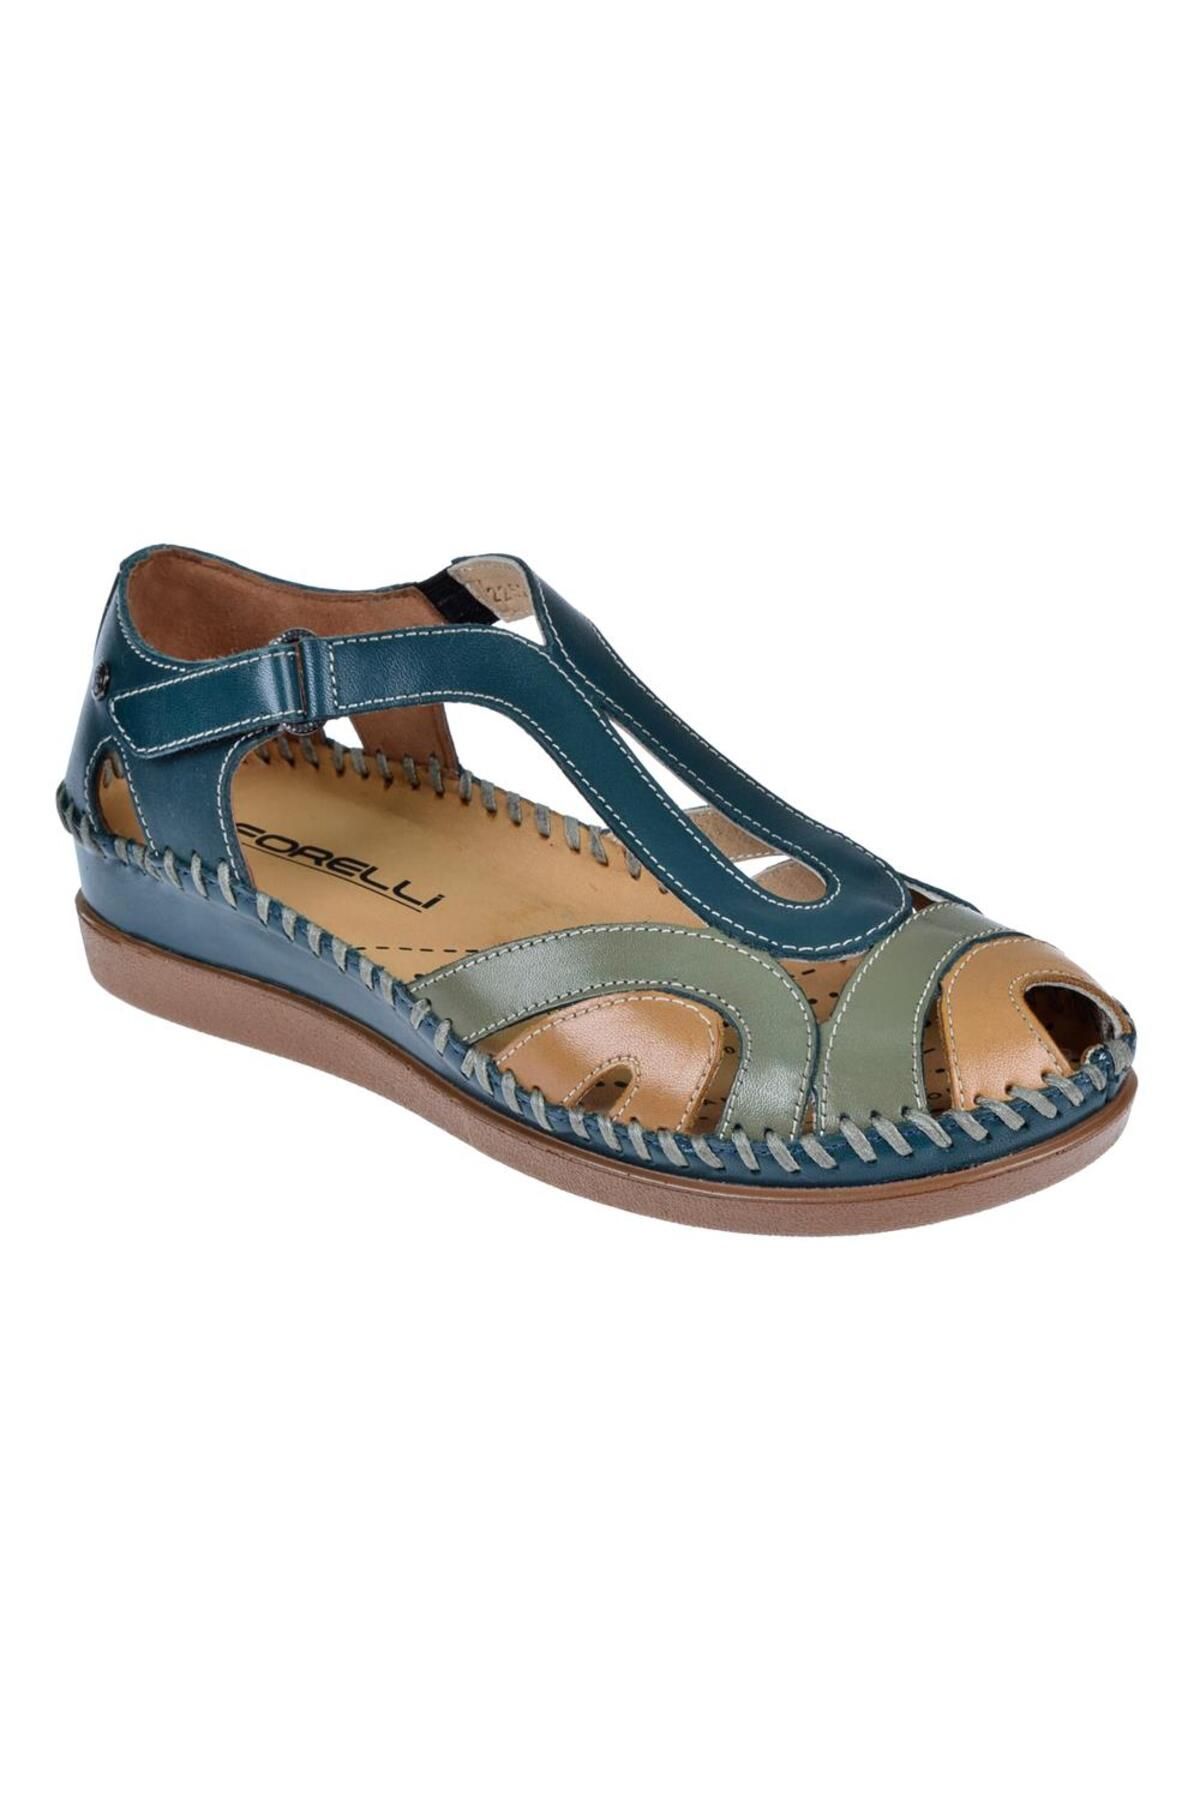 Forelli Hakiki Deri Comfort Kadın Sandalet FOR-22521   KOT MAVİ